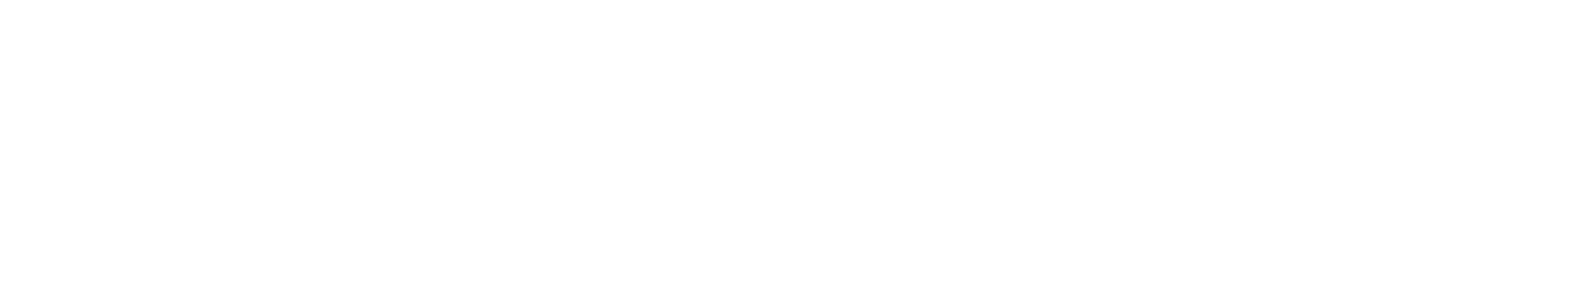 OPKO Health
 logo large for dark backgrounds (transparent PNG)